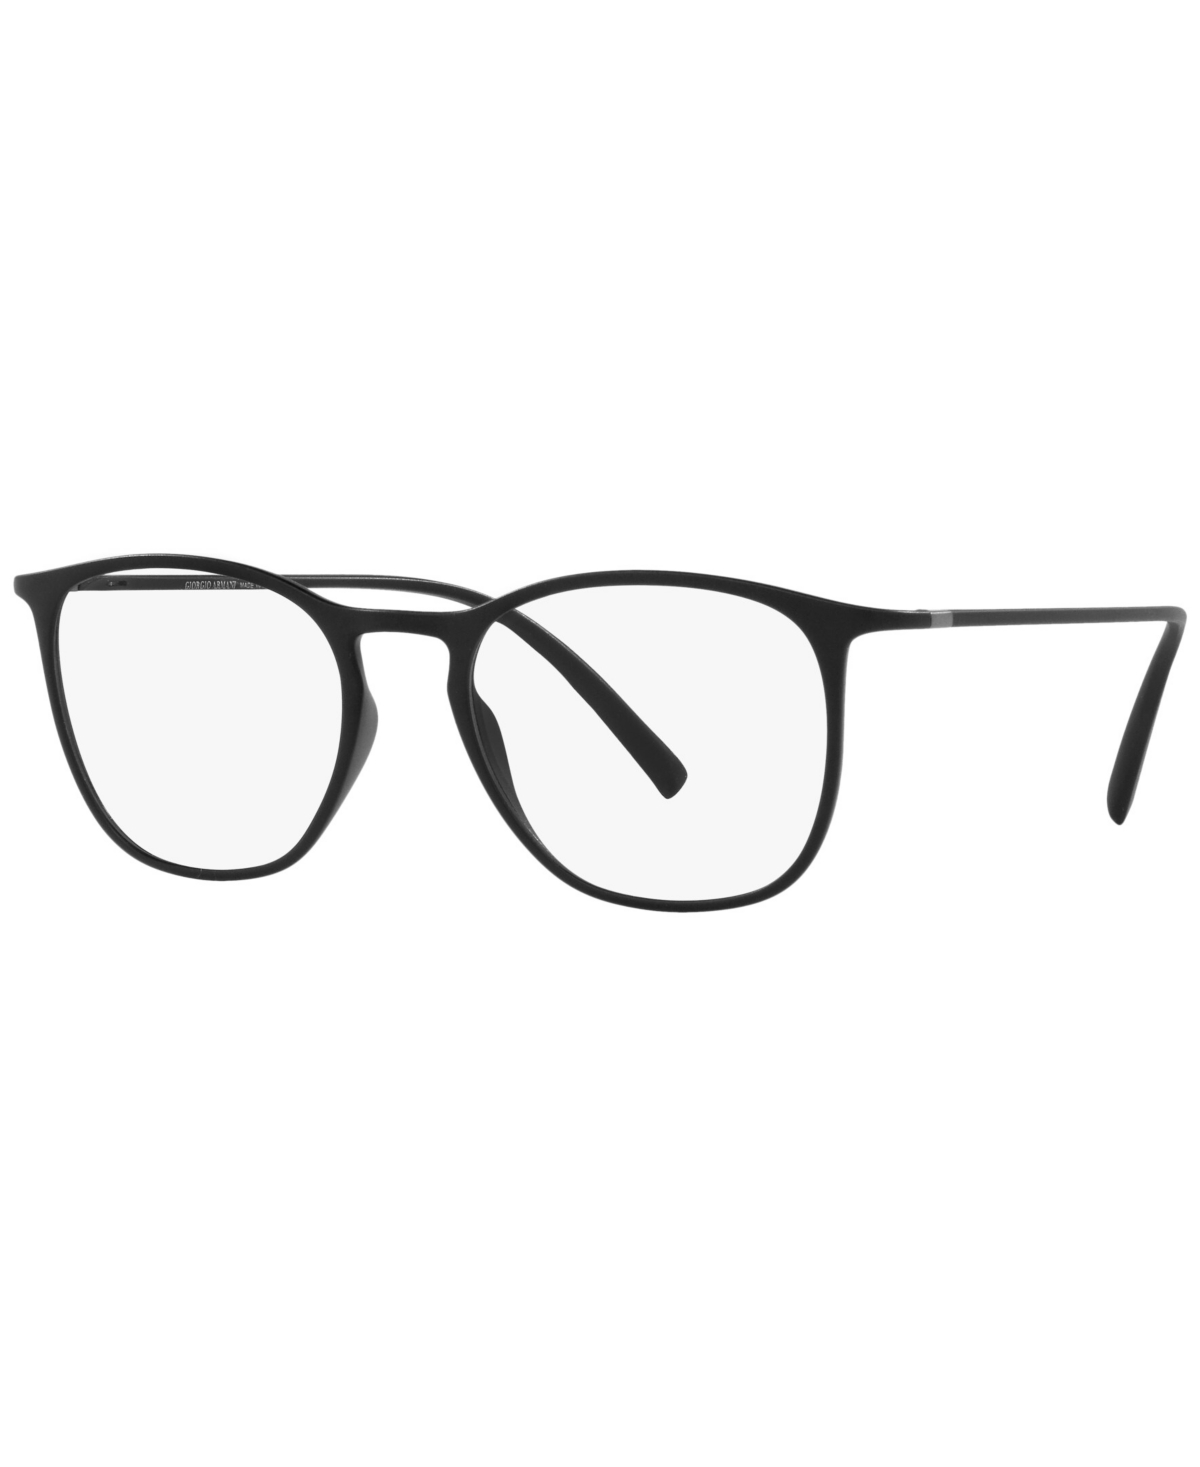 AR7202 Men's Square Eyeglasses - Matte Black